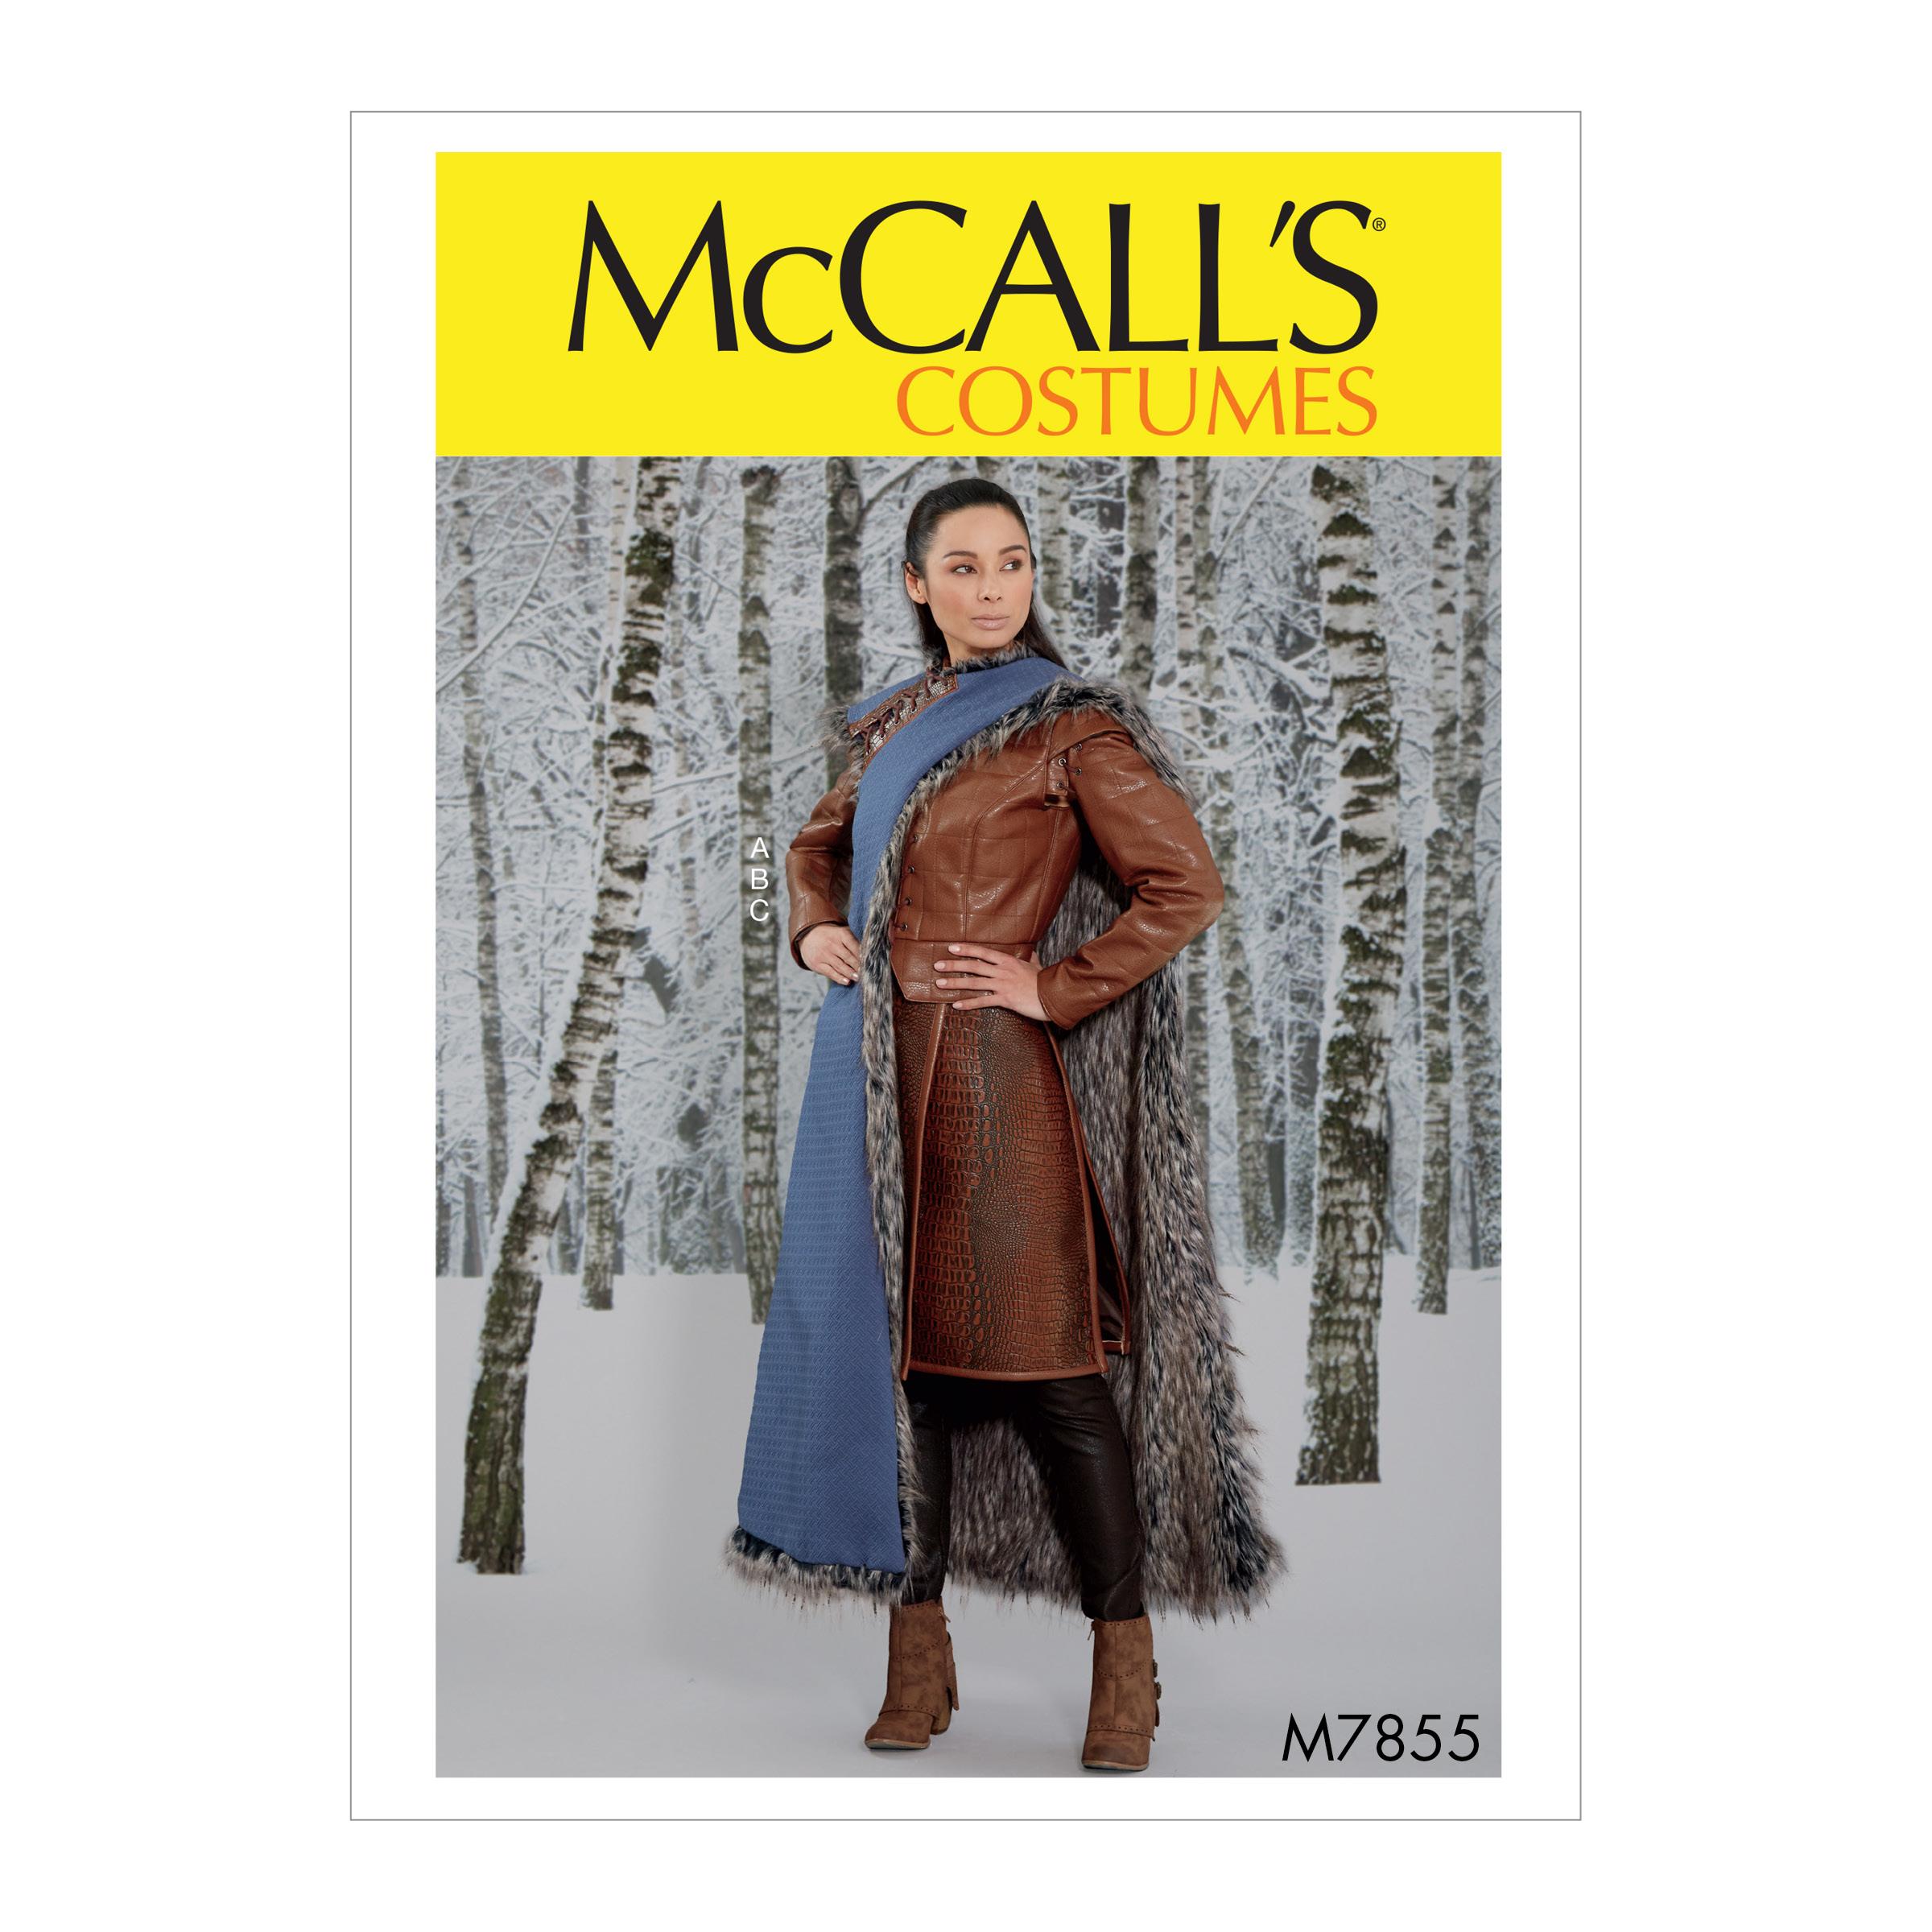 McCalls M7855 Costumes